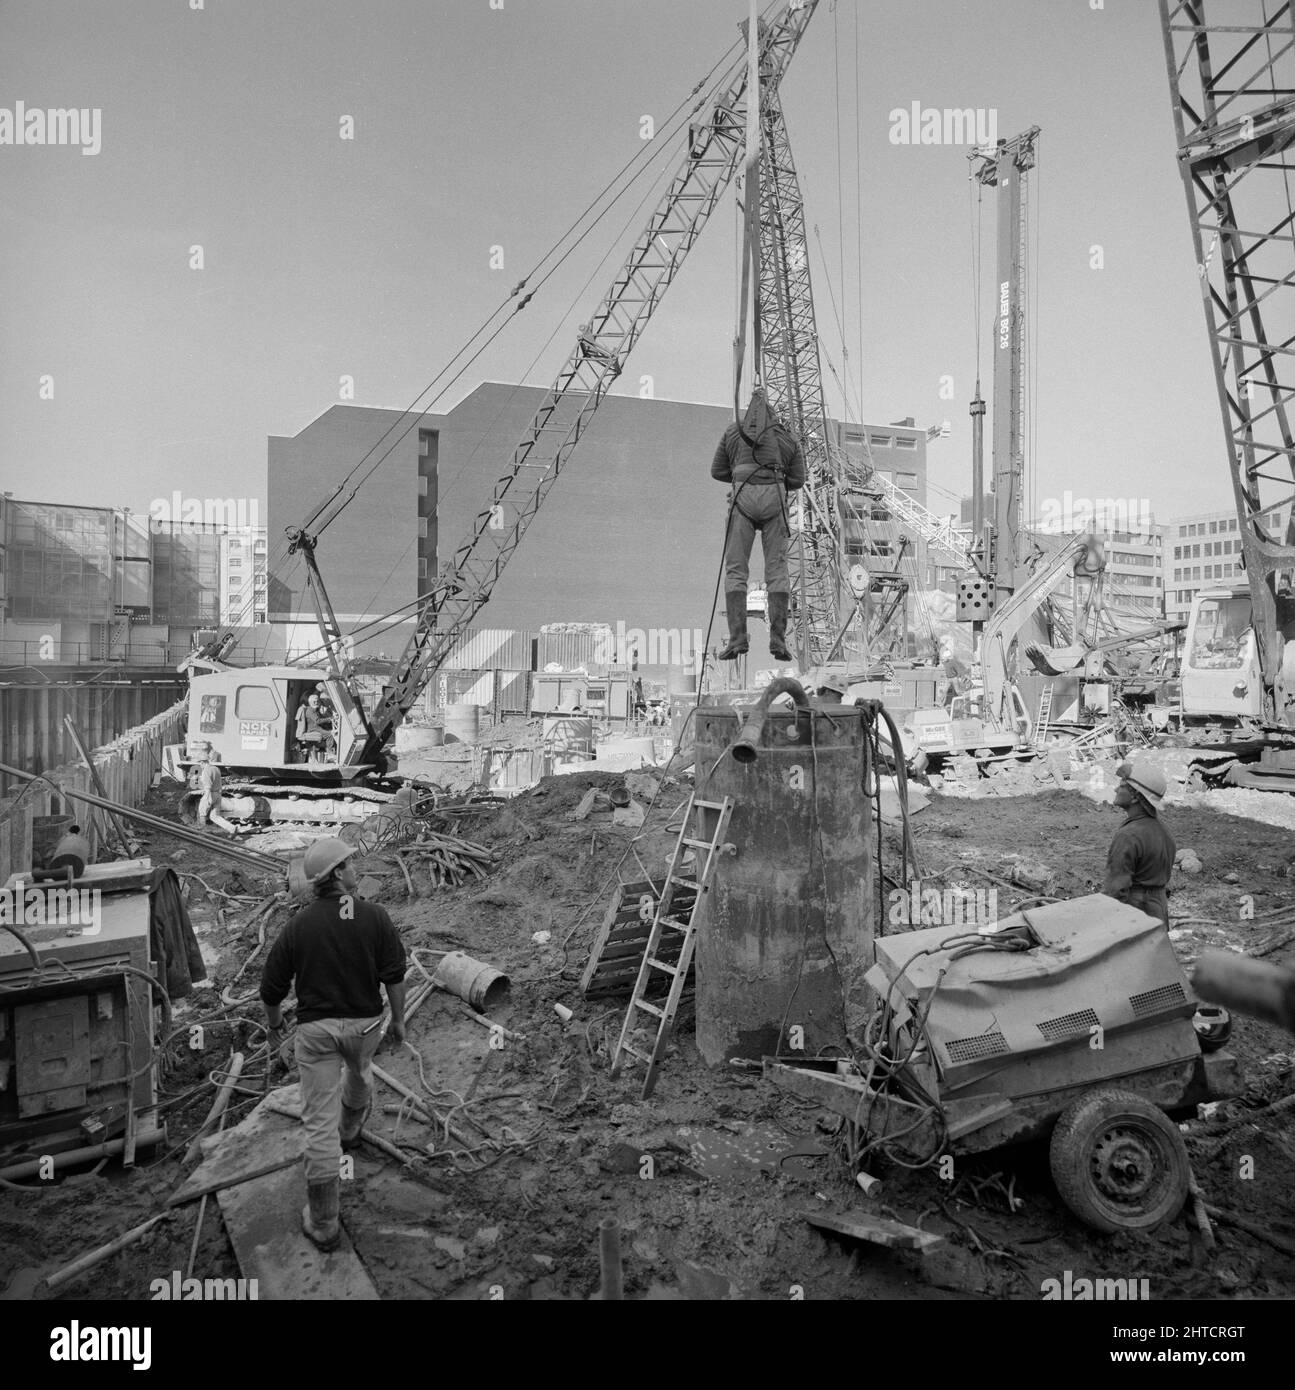 Vintners Place, Upper Thames Street, Queenhitthe, Londra, 01/10/1990. Un lavoratore che viene abbassato mediante gru nell'involucro di acciaio di una delle fondazioni di cumulo alesate a Vintners luogo per intraprendere un'ispezione. Laing ha sottoscritto il contratto di gestione &#XA3;79m per la costruzione di un ufficio di alta qualità 37.000sqm a Vintners luogo tra marzo 1989 e dicembre 1992. I lavori in loco sono iniziati nel giugno 1989 con la demolizione di 10 edifici, tra cui Vintry House e Kennett Wharf, sul lungofiume. La fa&#xe7;ade di Tamigi House lungo Queen Street Place è stato conservato e incorporato Foto Stock